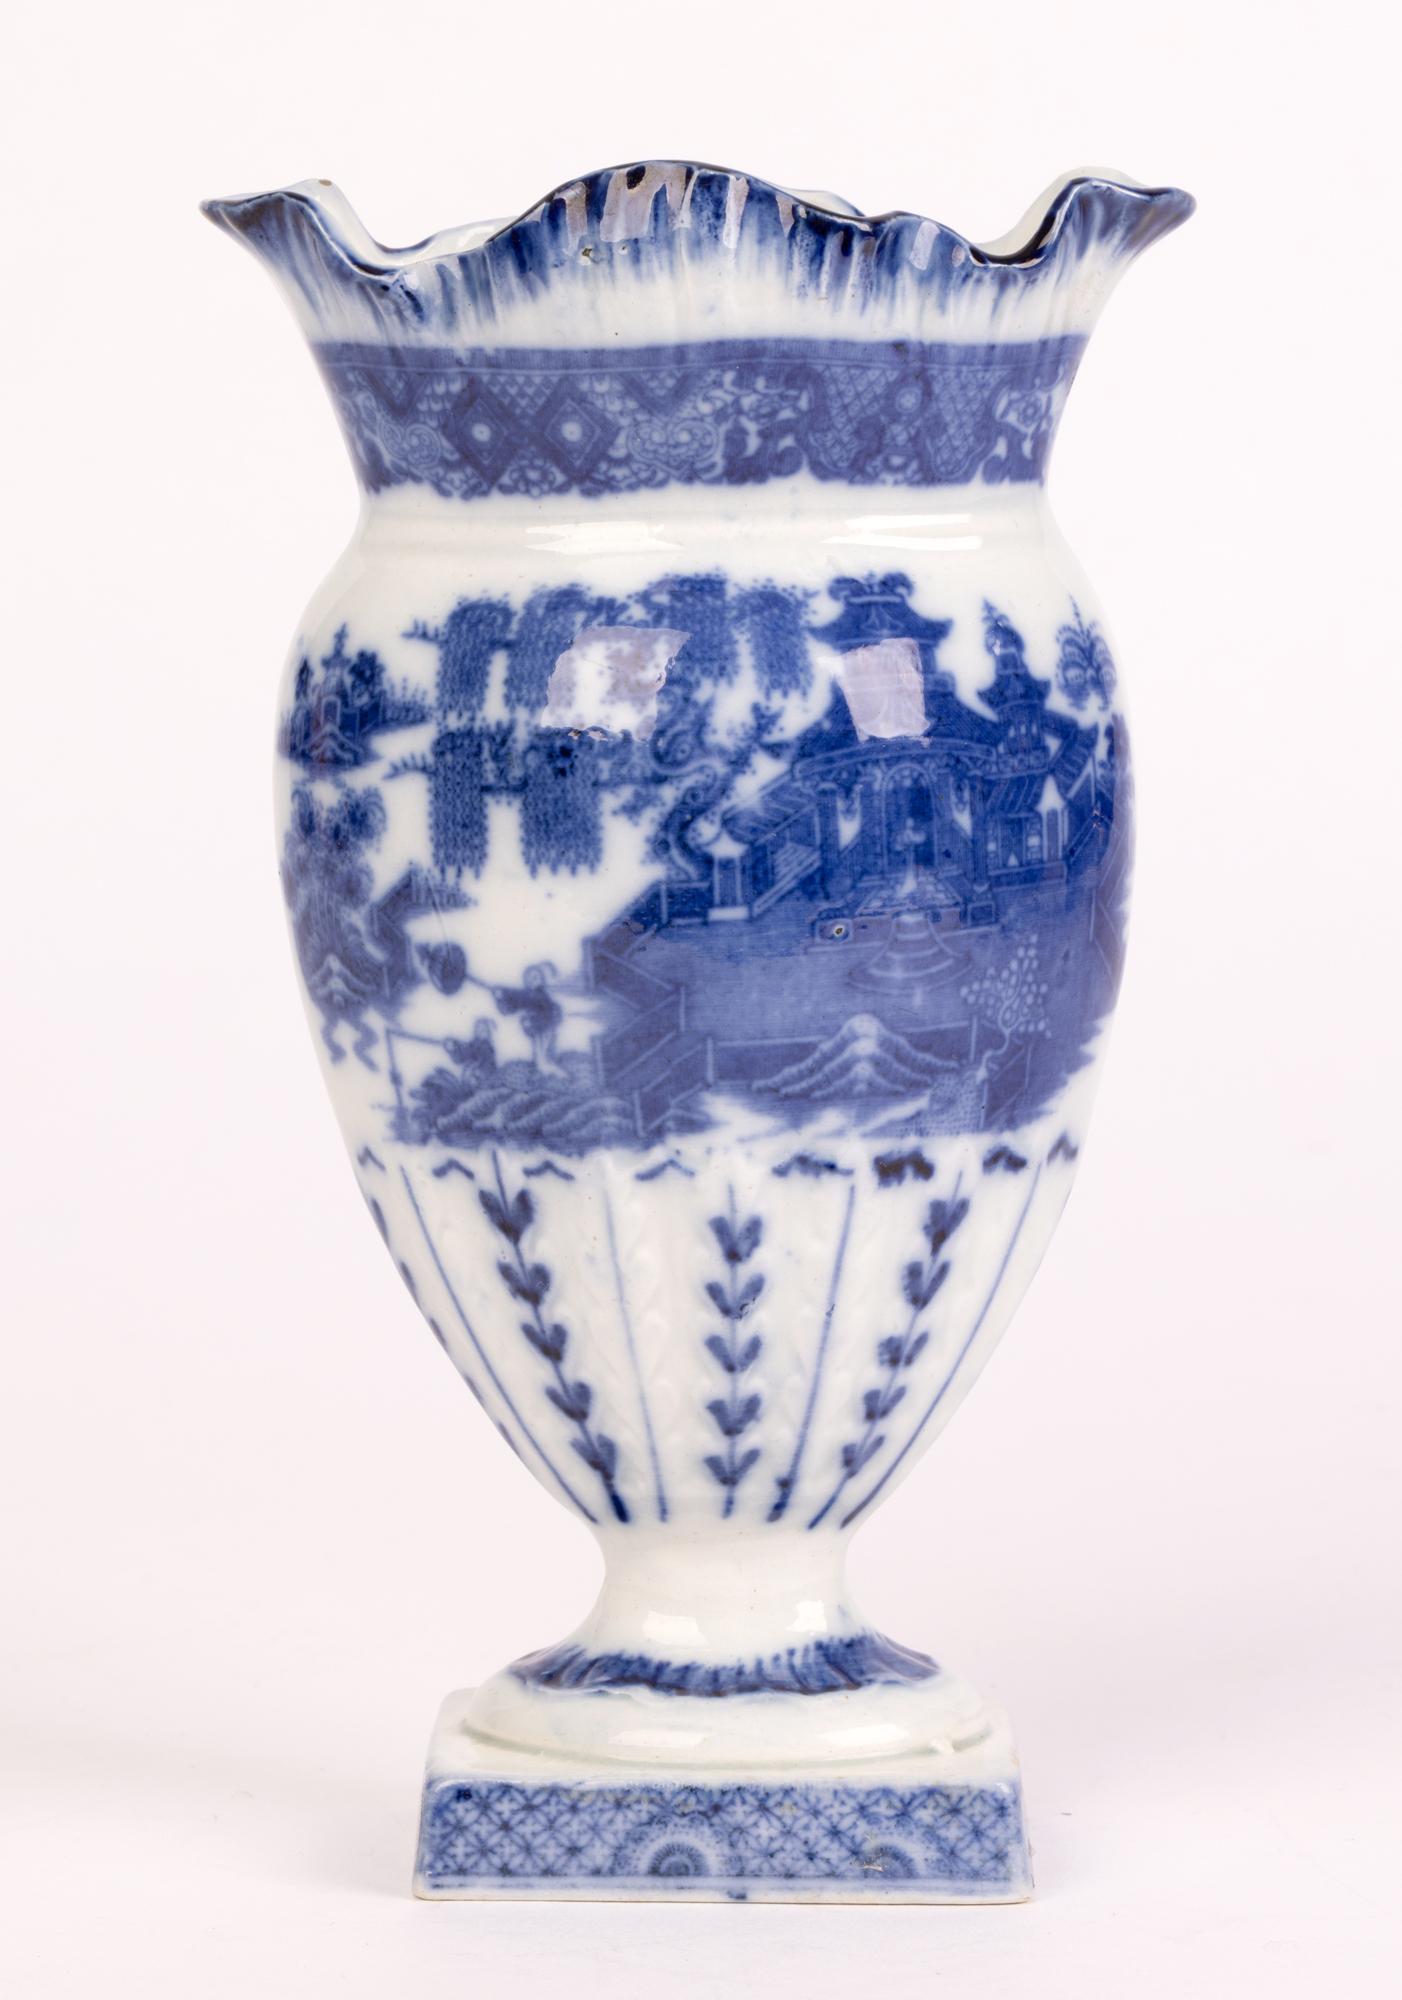 Glazed Georgian English Pearlware Chinese Landscape Blue & White Ceramic Vase